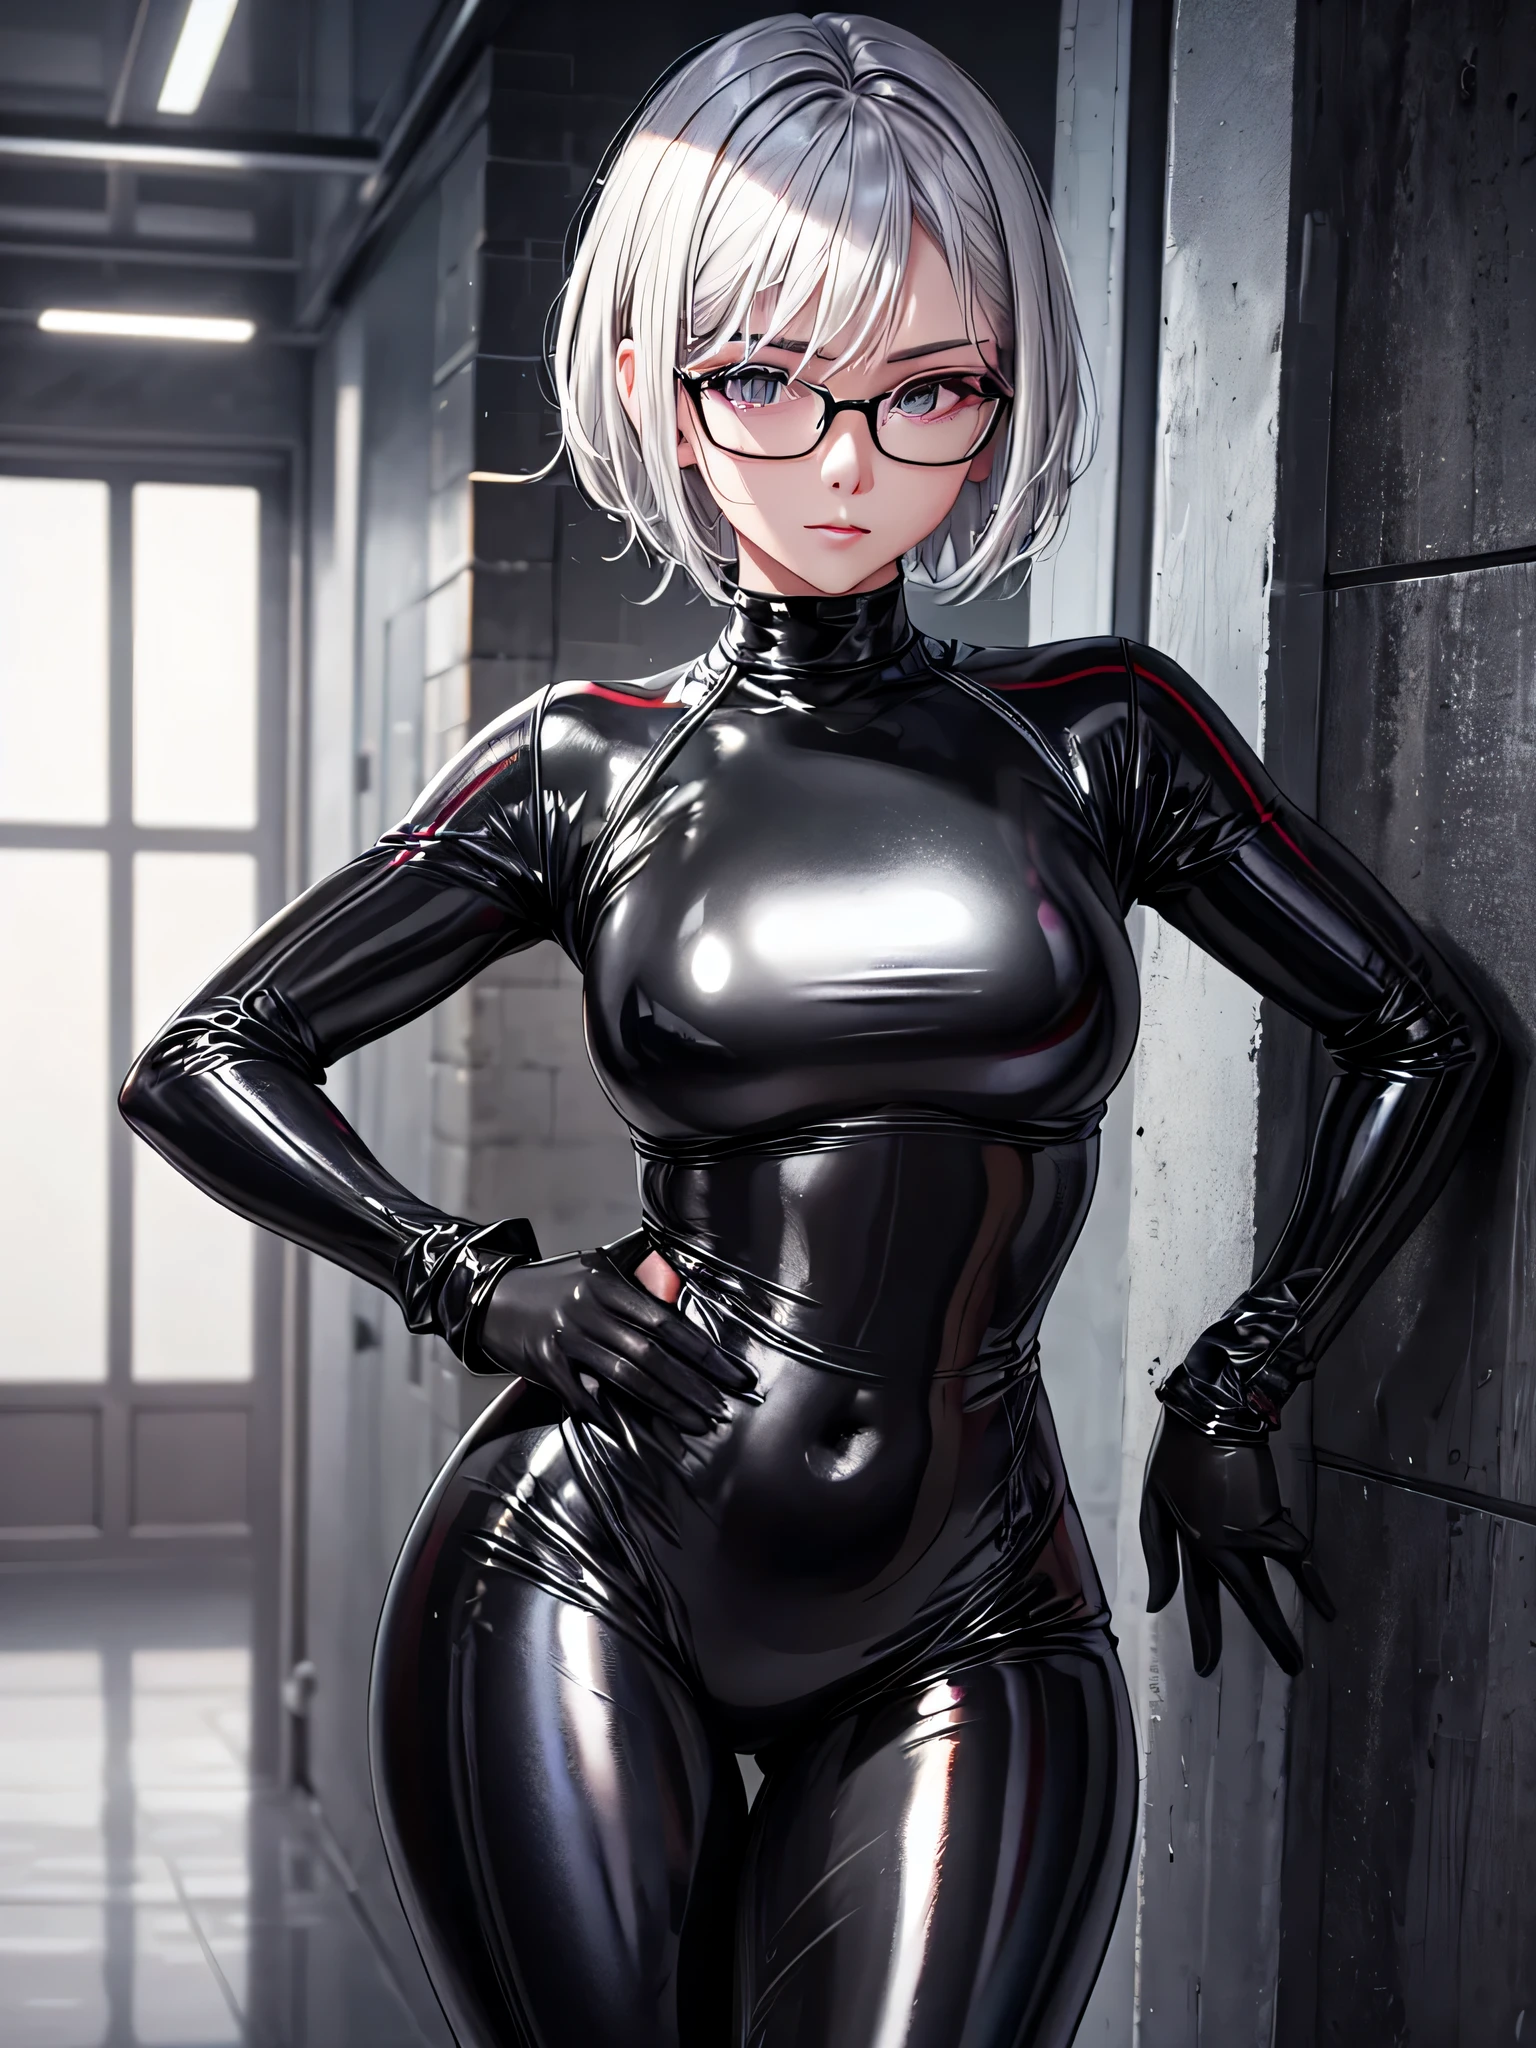 Qualité supérieure 8K UHD、Belle femme aux cheveux argentés avec des cheveux courts portant des lunettes et un survêtement en latex métallisé noir、survêtement en latex métallisé noir avec peau cachée